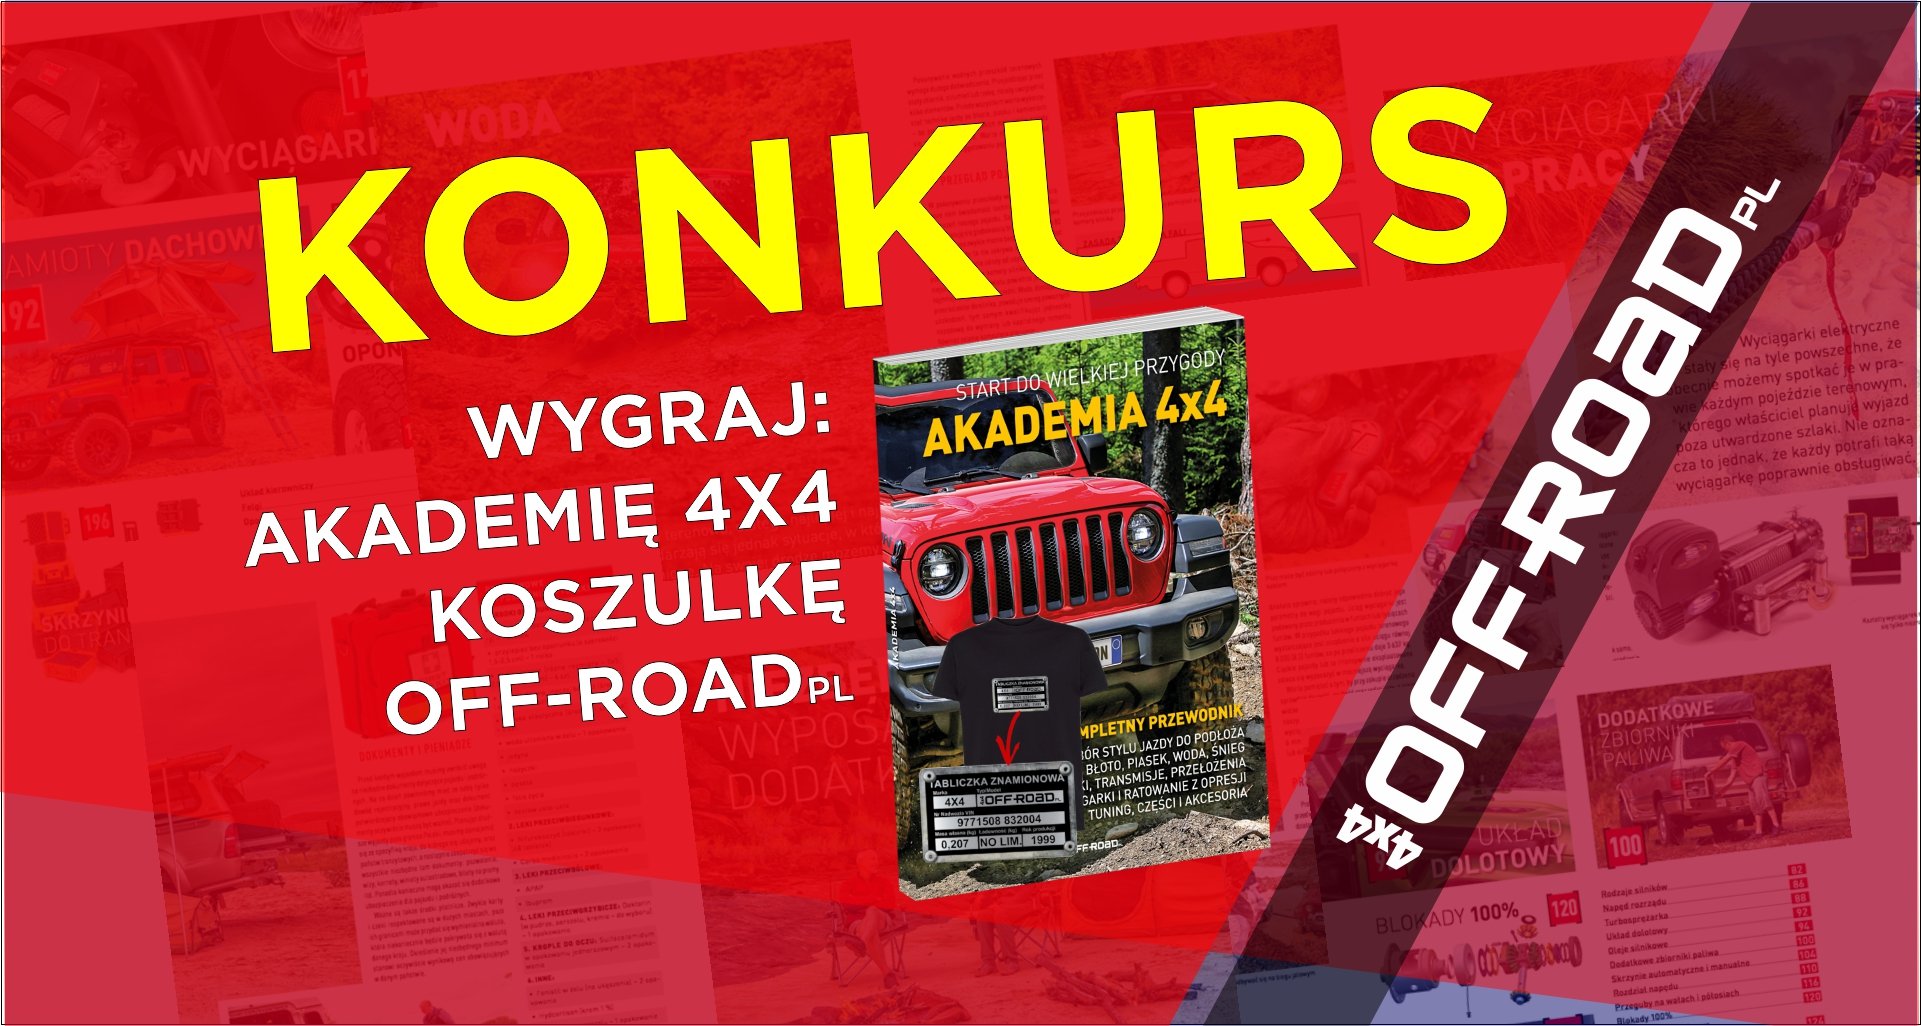 KONKURS - Akademia 4x4 i koszulki od OFF-ROAD.pl za zdjęcie